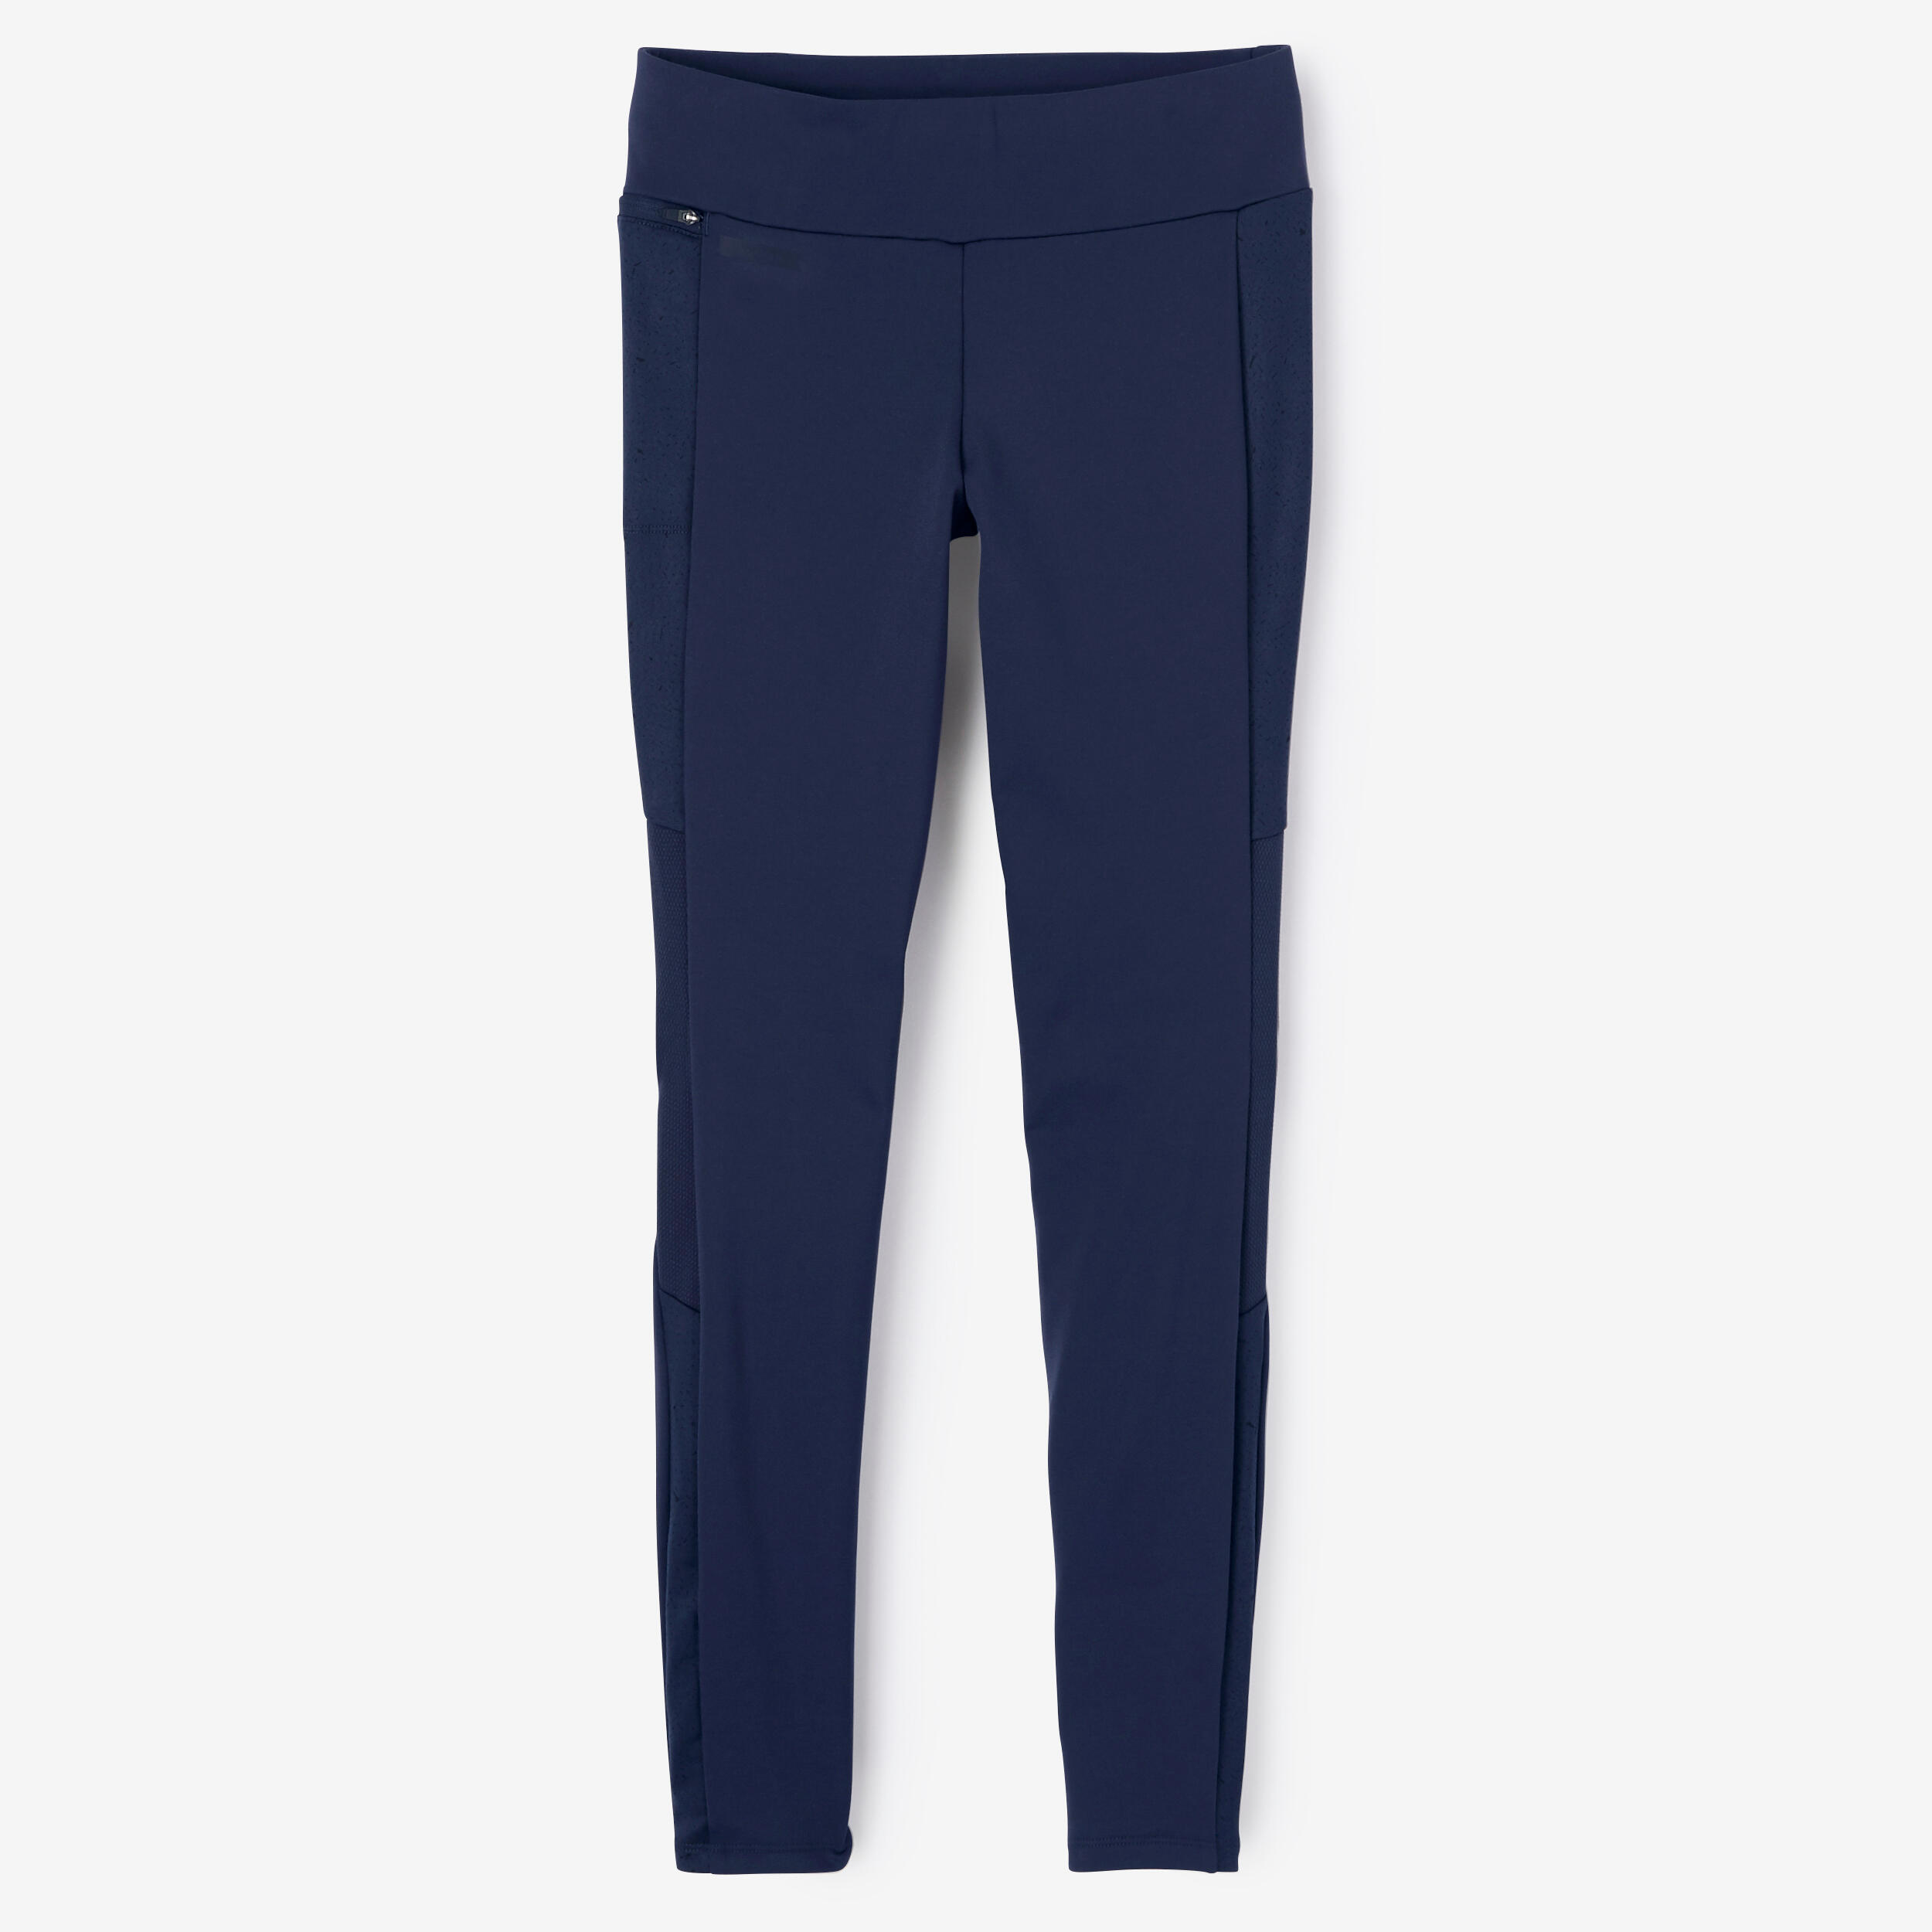 Women's long running leggings Warm+ - dark blue 8/9